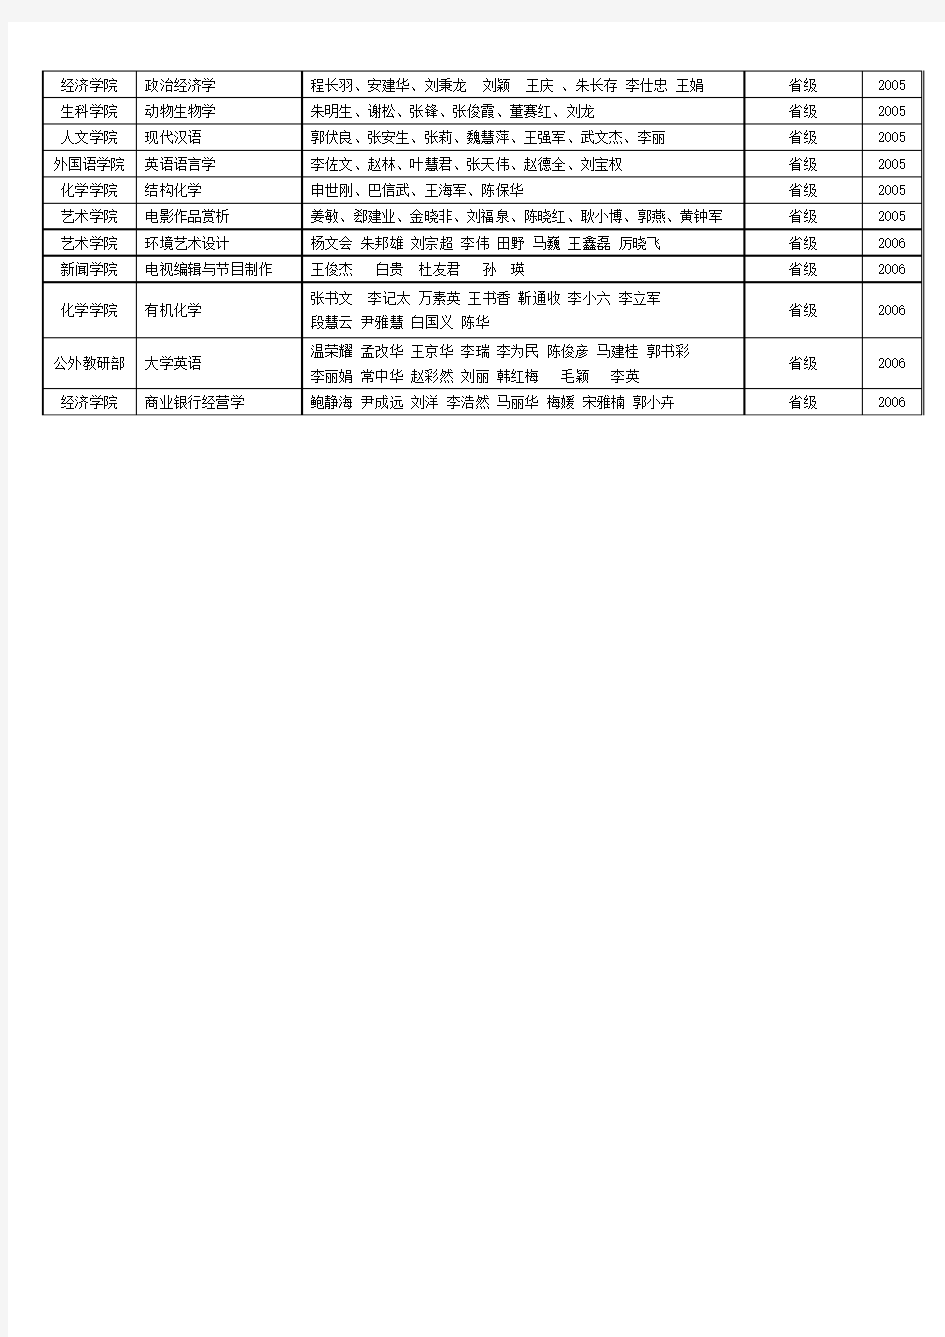 河北大学20022006年省级(国家级)精品课程名单(48门)